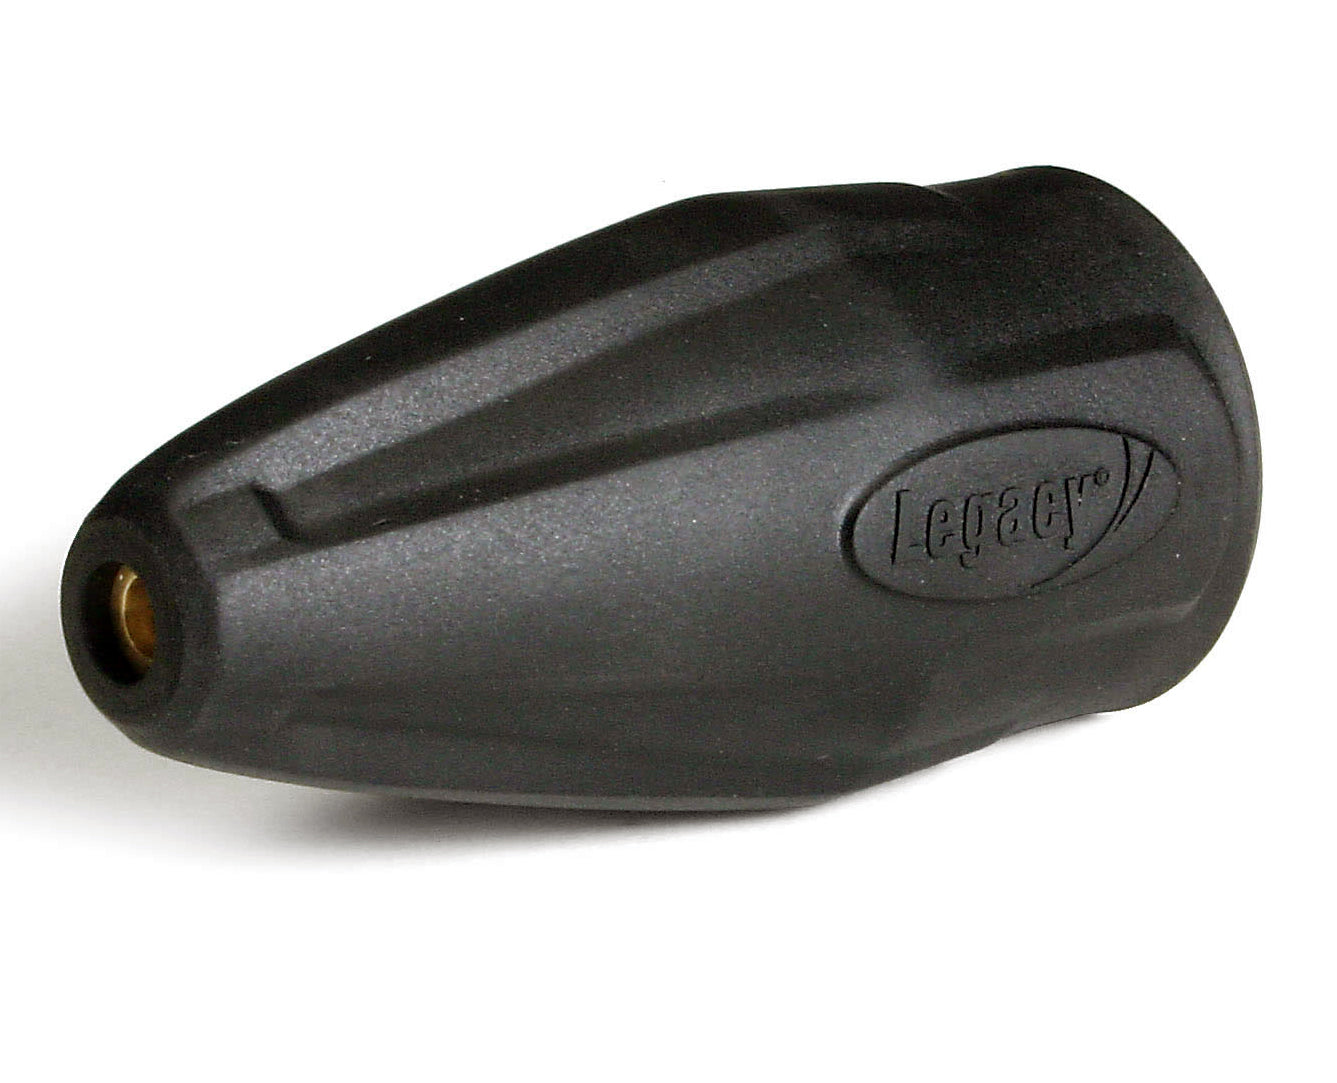 Legacy 9.302-246.0 4350 PSI Nozzle #5.5 Hotsy / Shark Revolution Turbo Nozzle